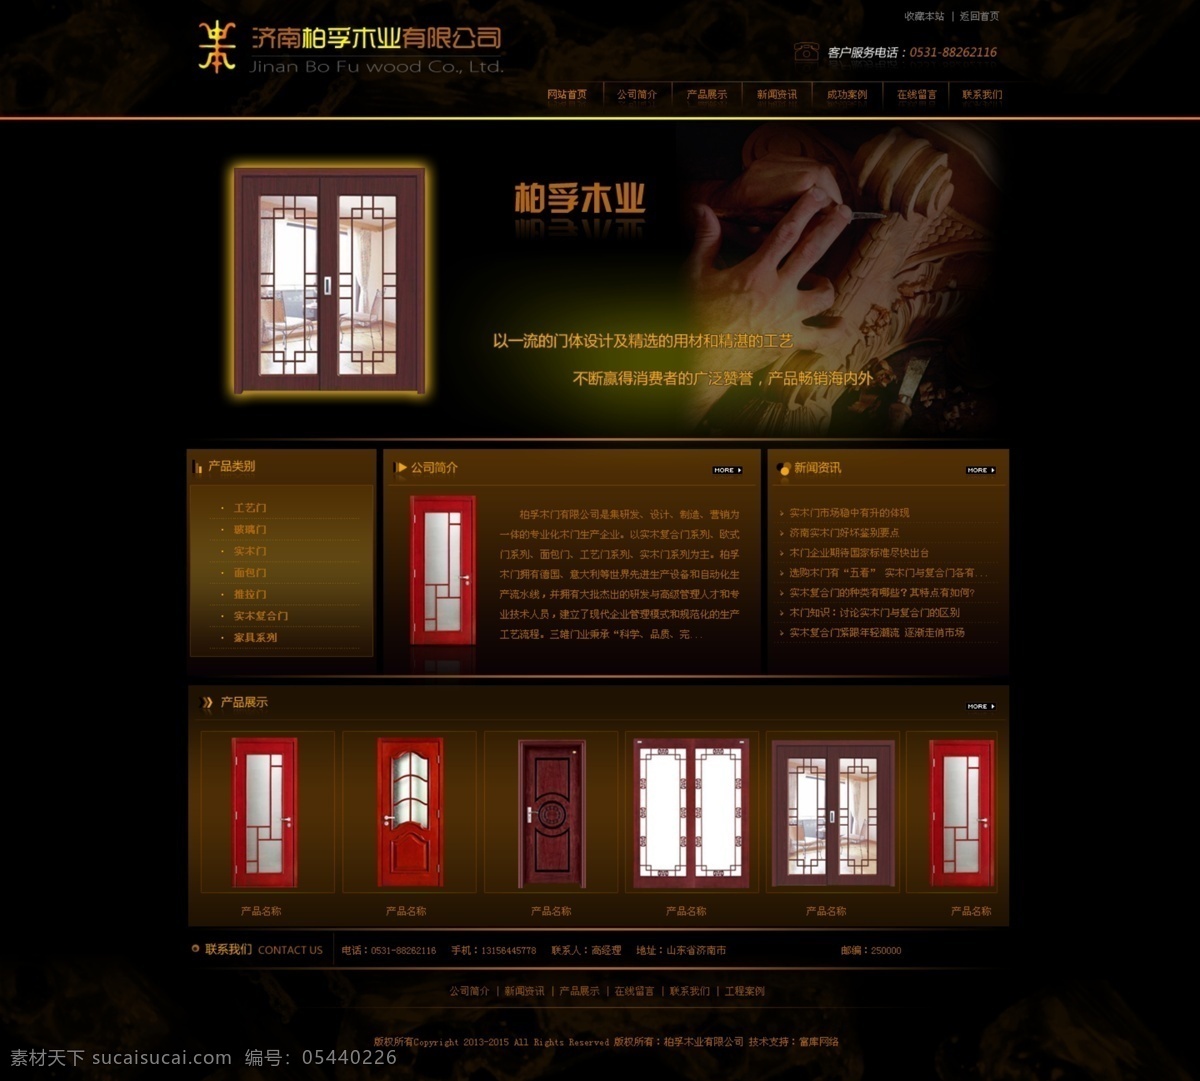 木门 木业 网页 网页模板 网站 效果图 源文件 中文模板 类 模板下载 网页素材